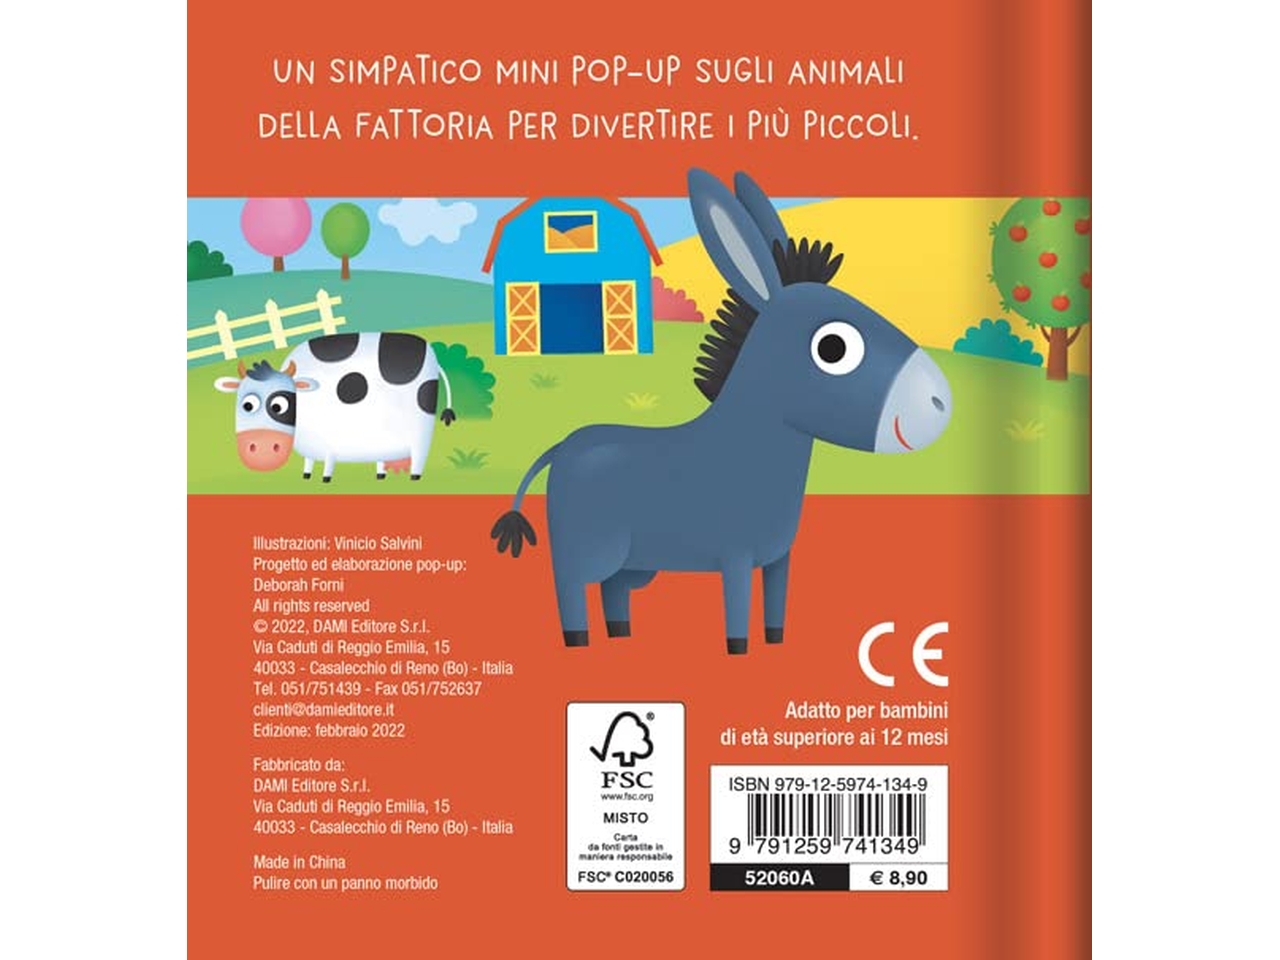 Libro dami editore mini pop-up animali in fattoria